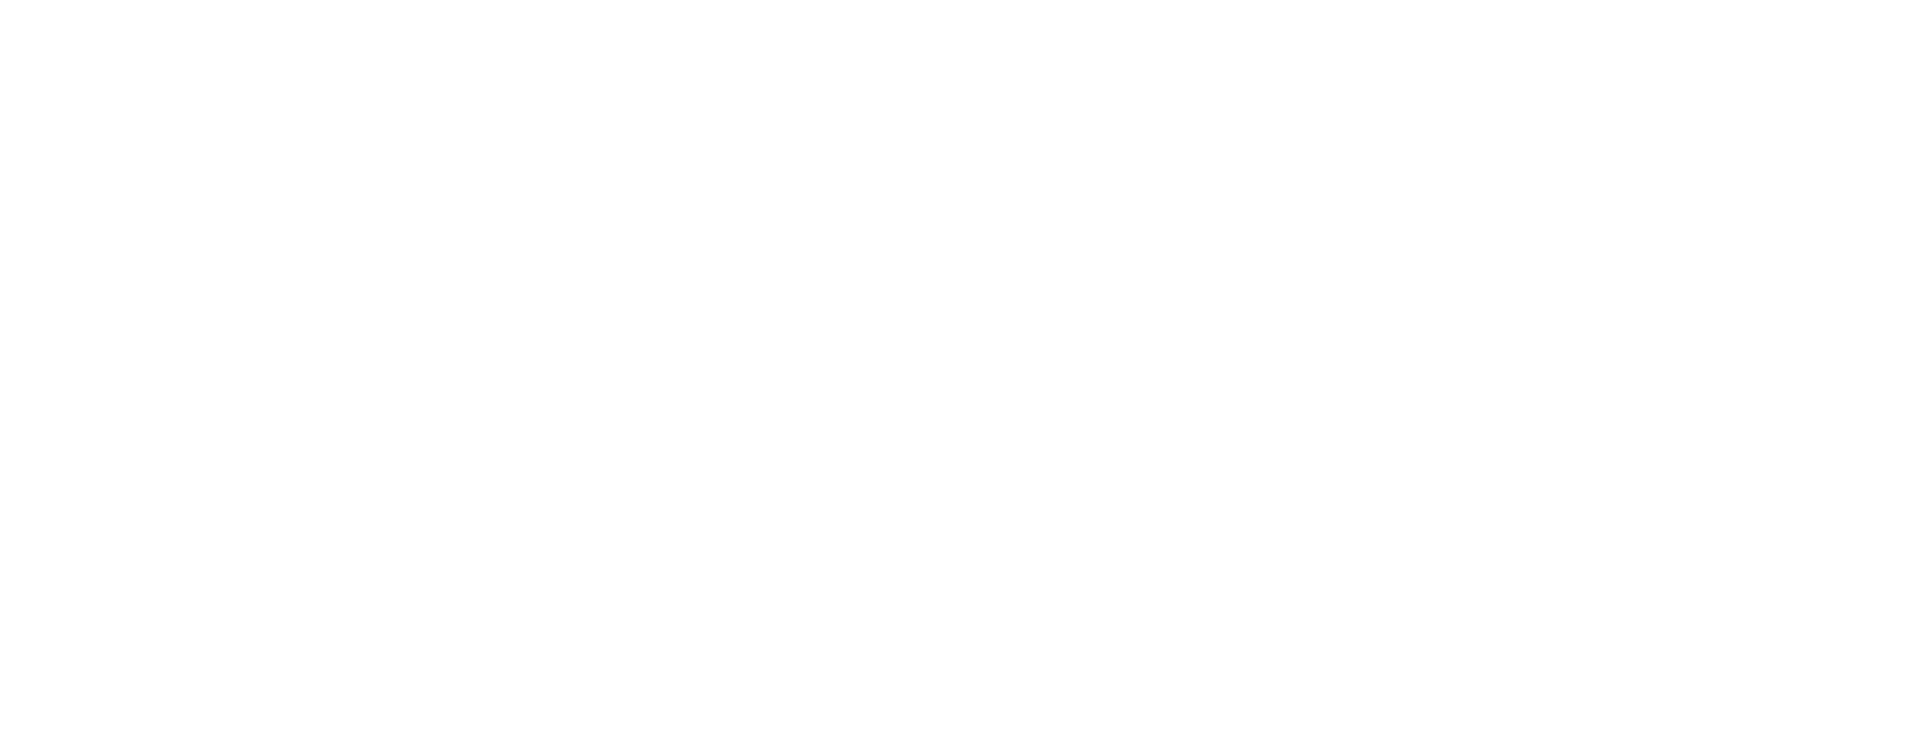 Genesis Engineering